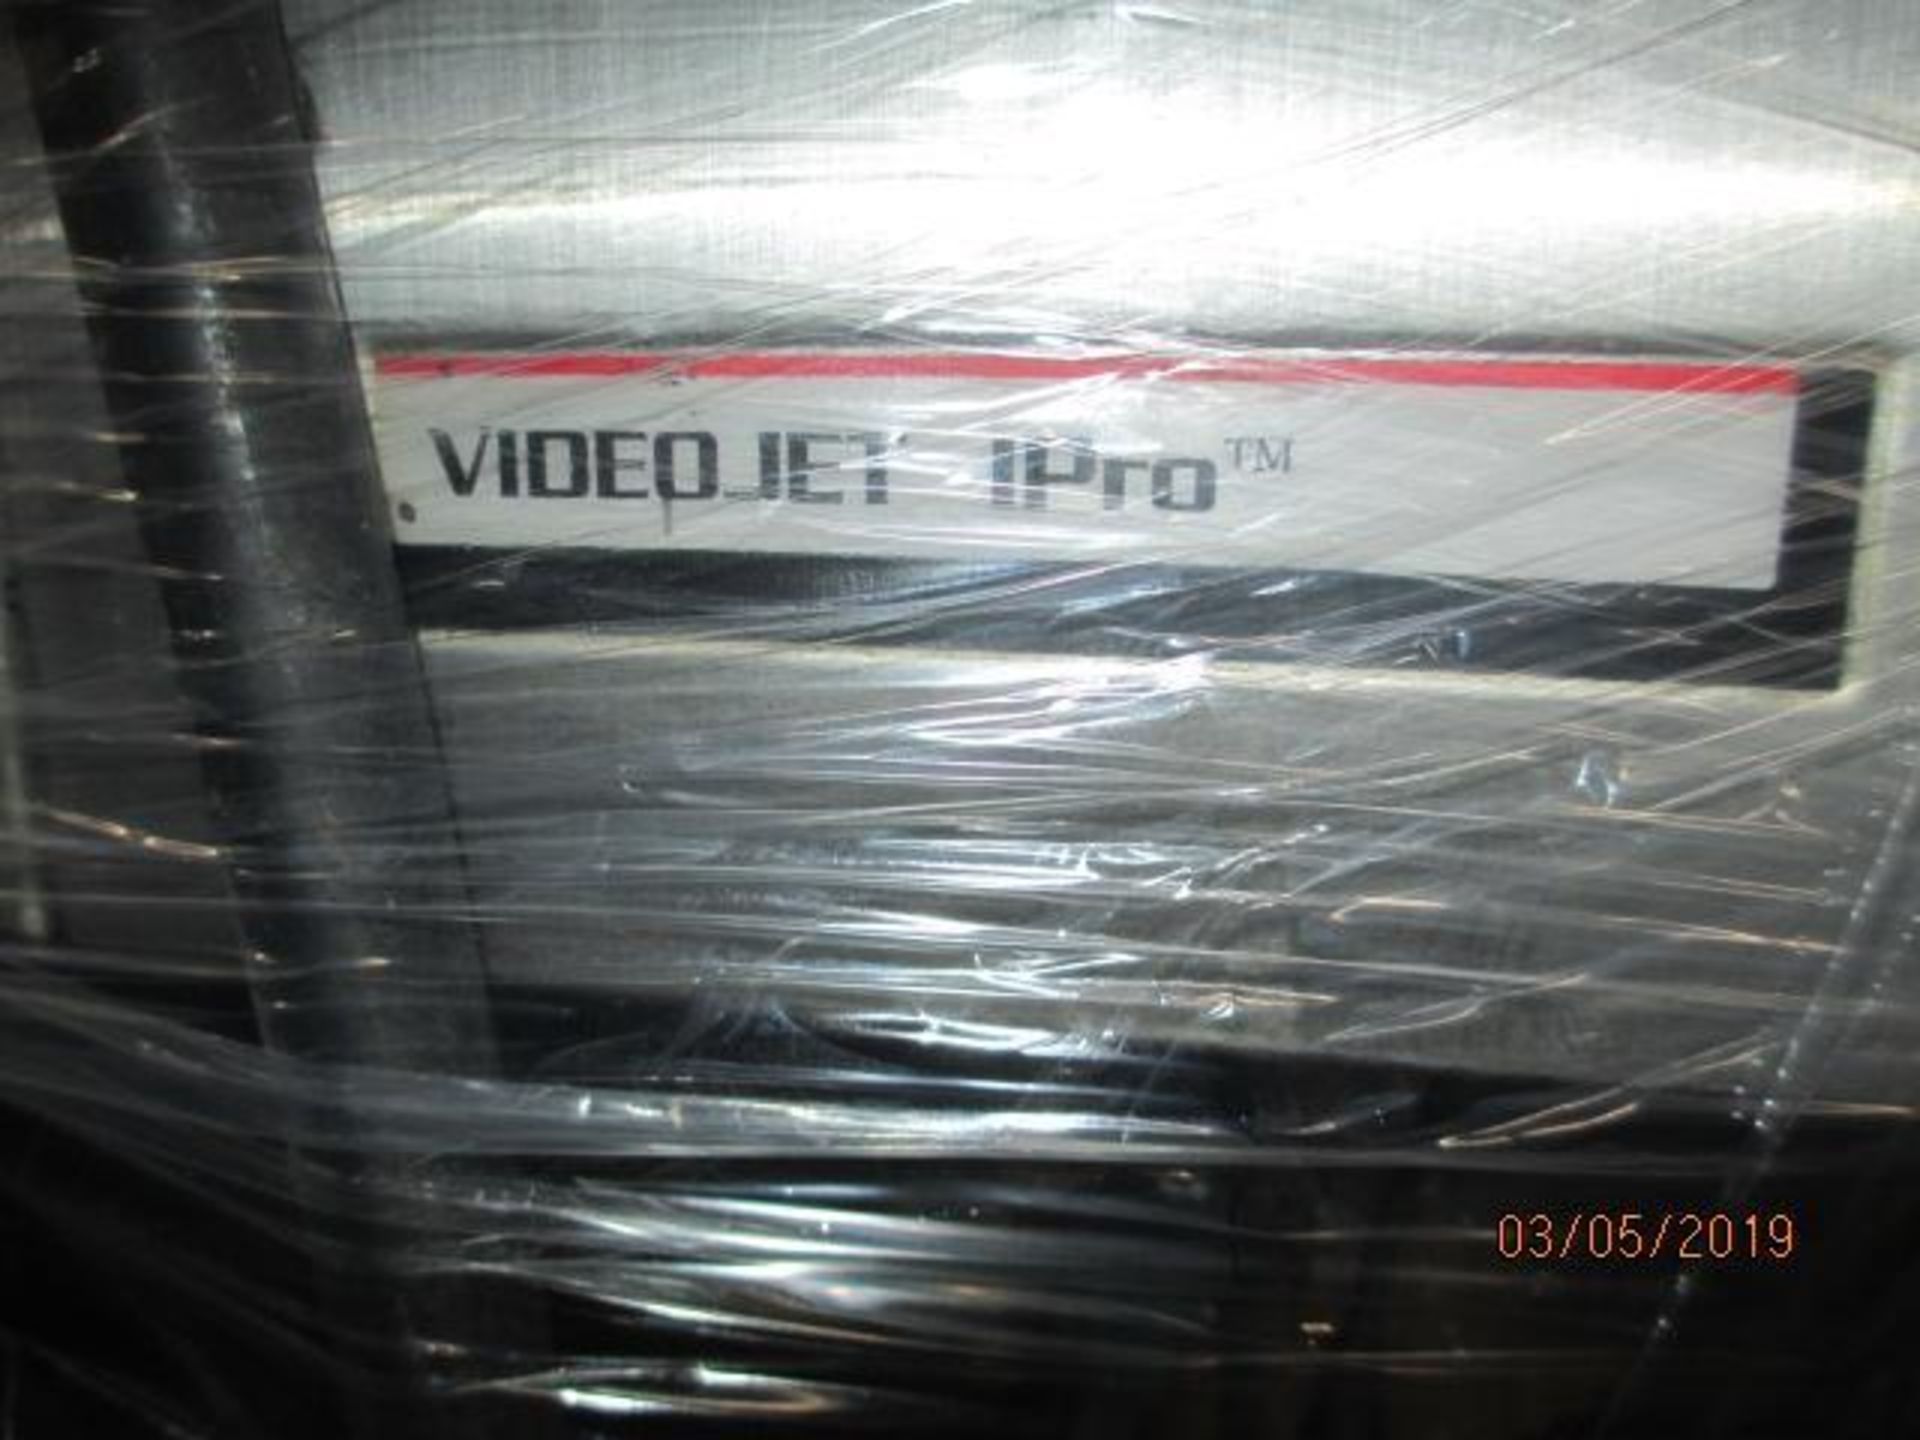 Video Jet IPro Series Inkjet parts printer - Image 3 of 3